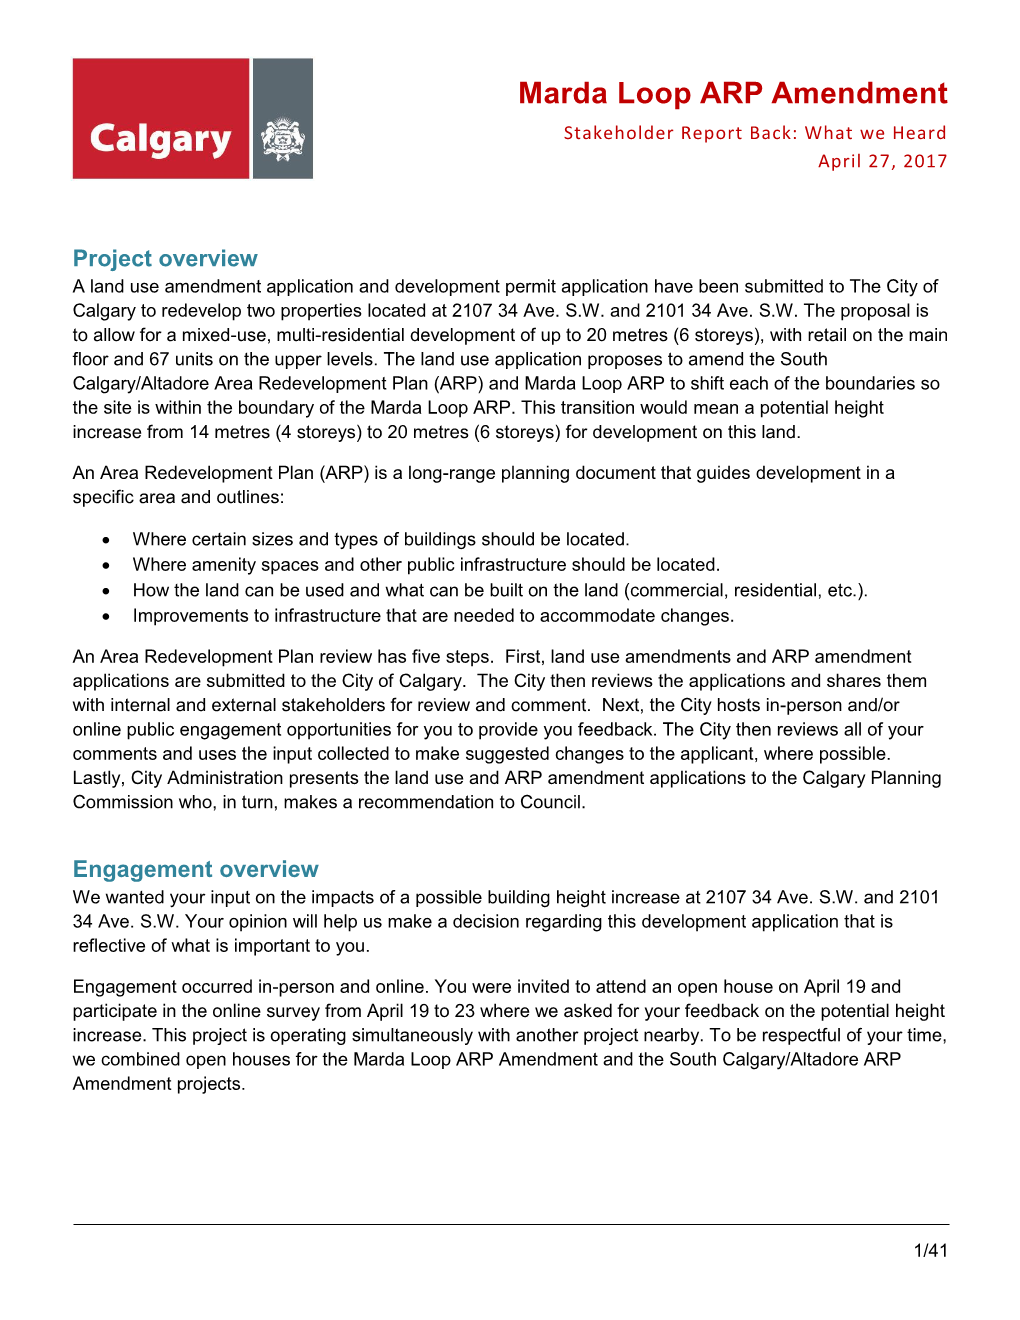 Marda Loop ARP Amendment Stakeholder Report Back: What We Heard April 27, 2017